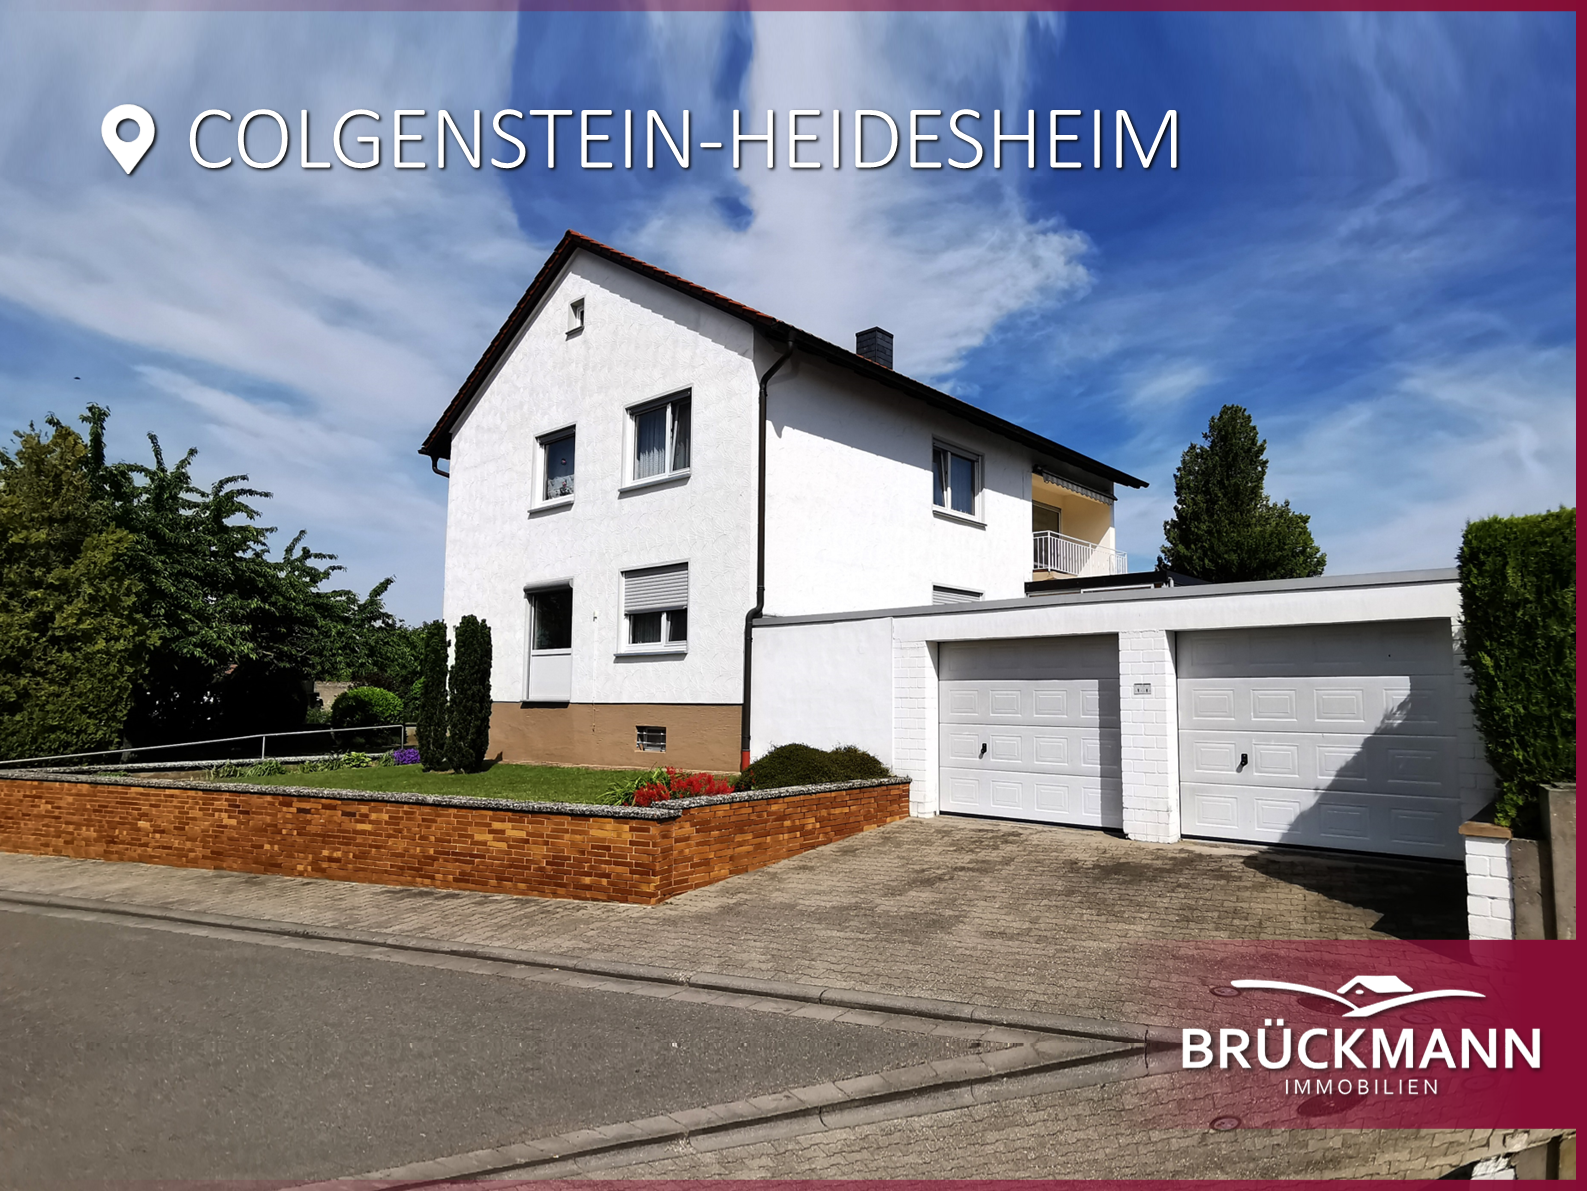 Gönnen Sie Ihrer Familie ein gepflegtes Anwesen mit großem Garten und Blick in die Weinberge!, 67283 Colgenstein-Heidesheim, Einfamilienhaus